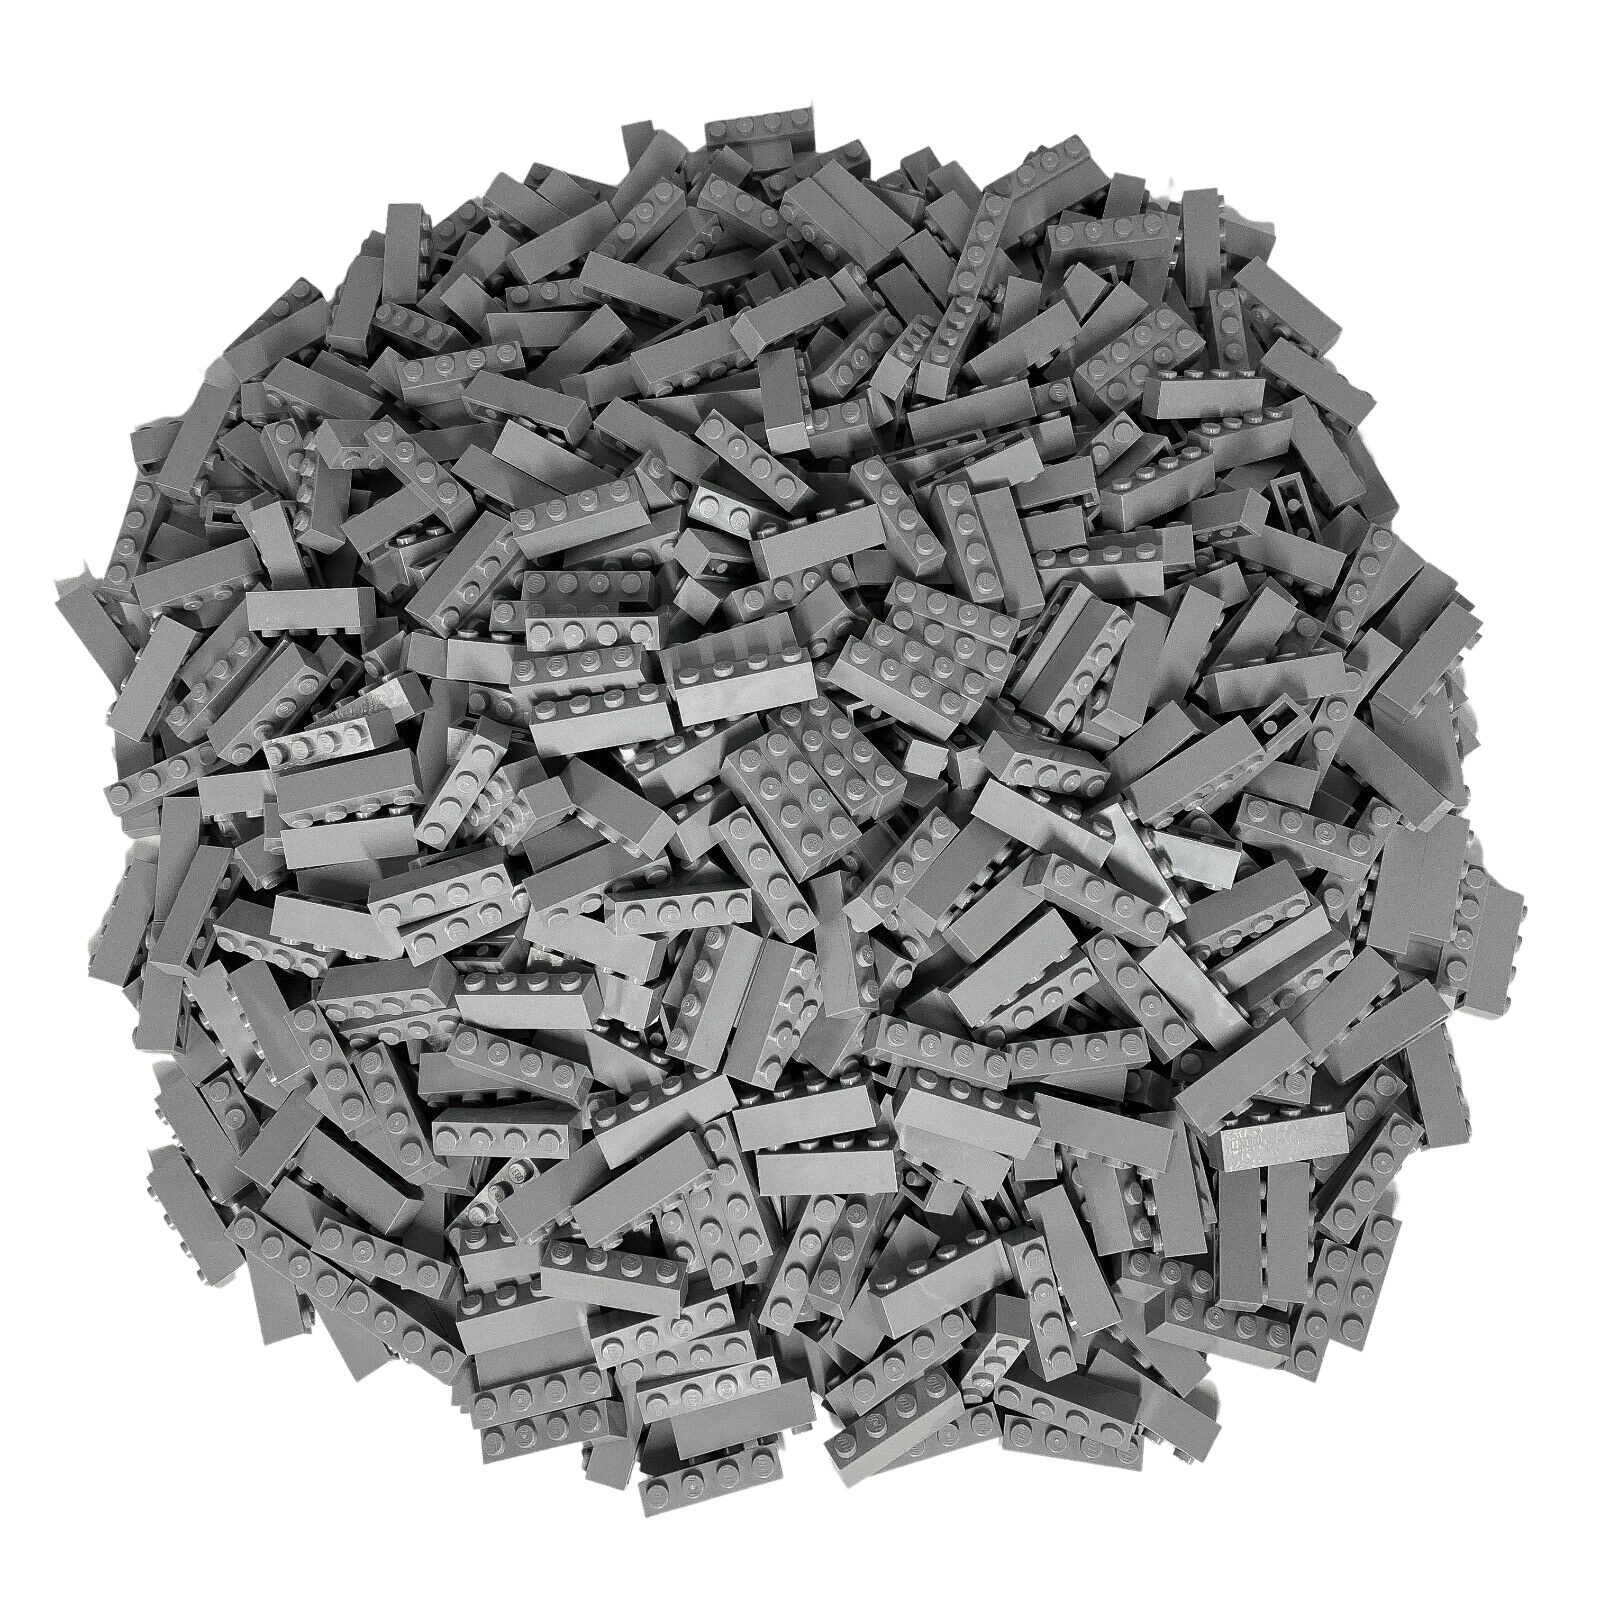 LEGO® Spielbausteine LEGO® 1x4 Steine Hochsteine Hellgrau - 3010 NEU! Menge 250x, (Creativ-Set, 250 St), Made in Europe